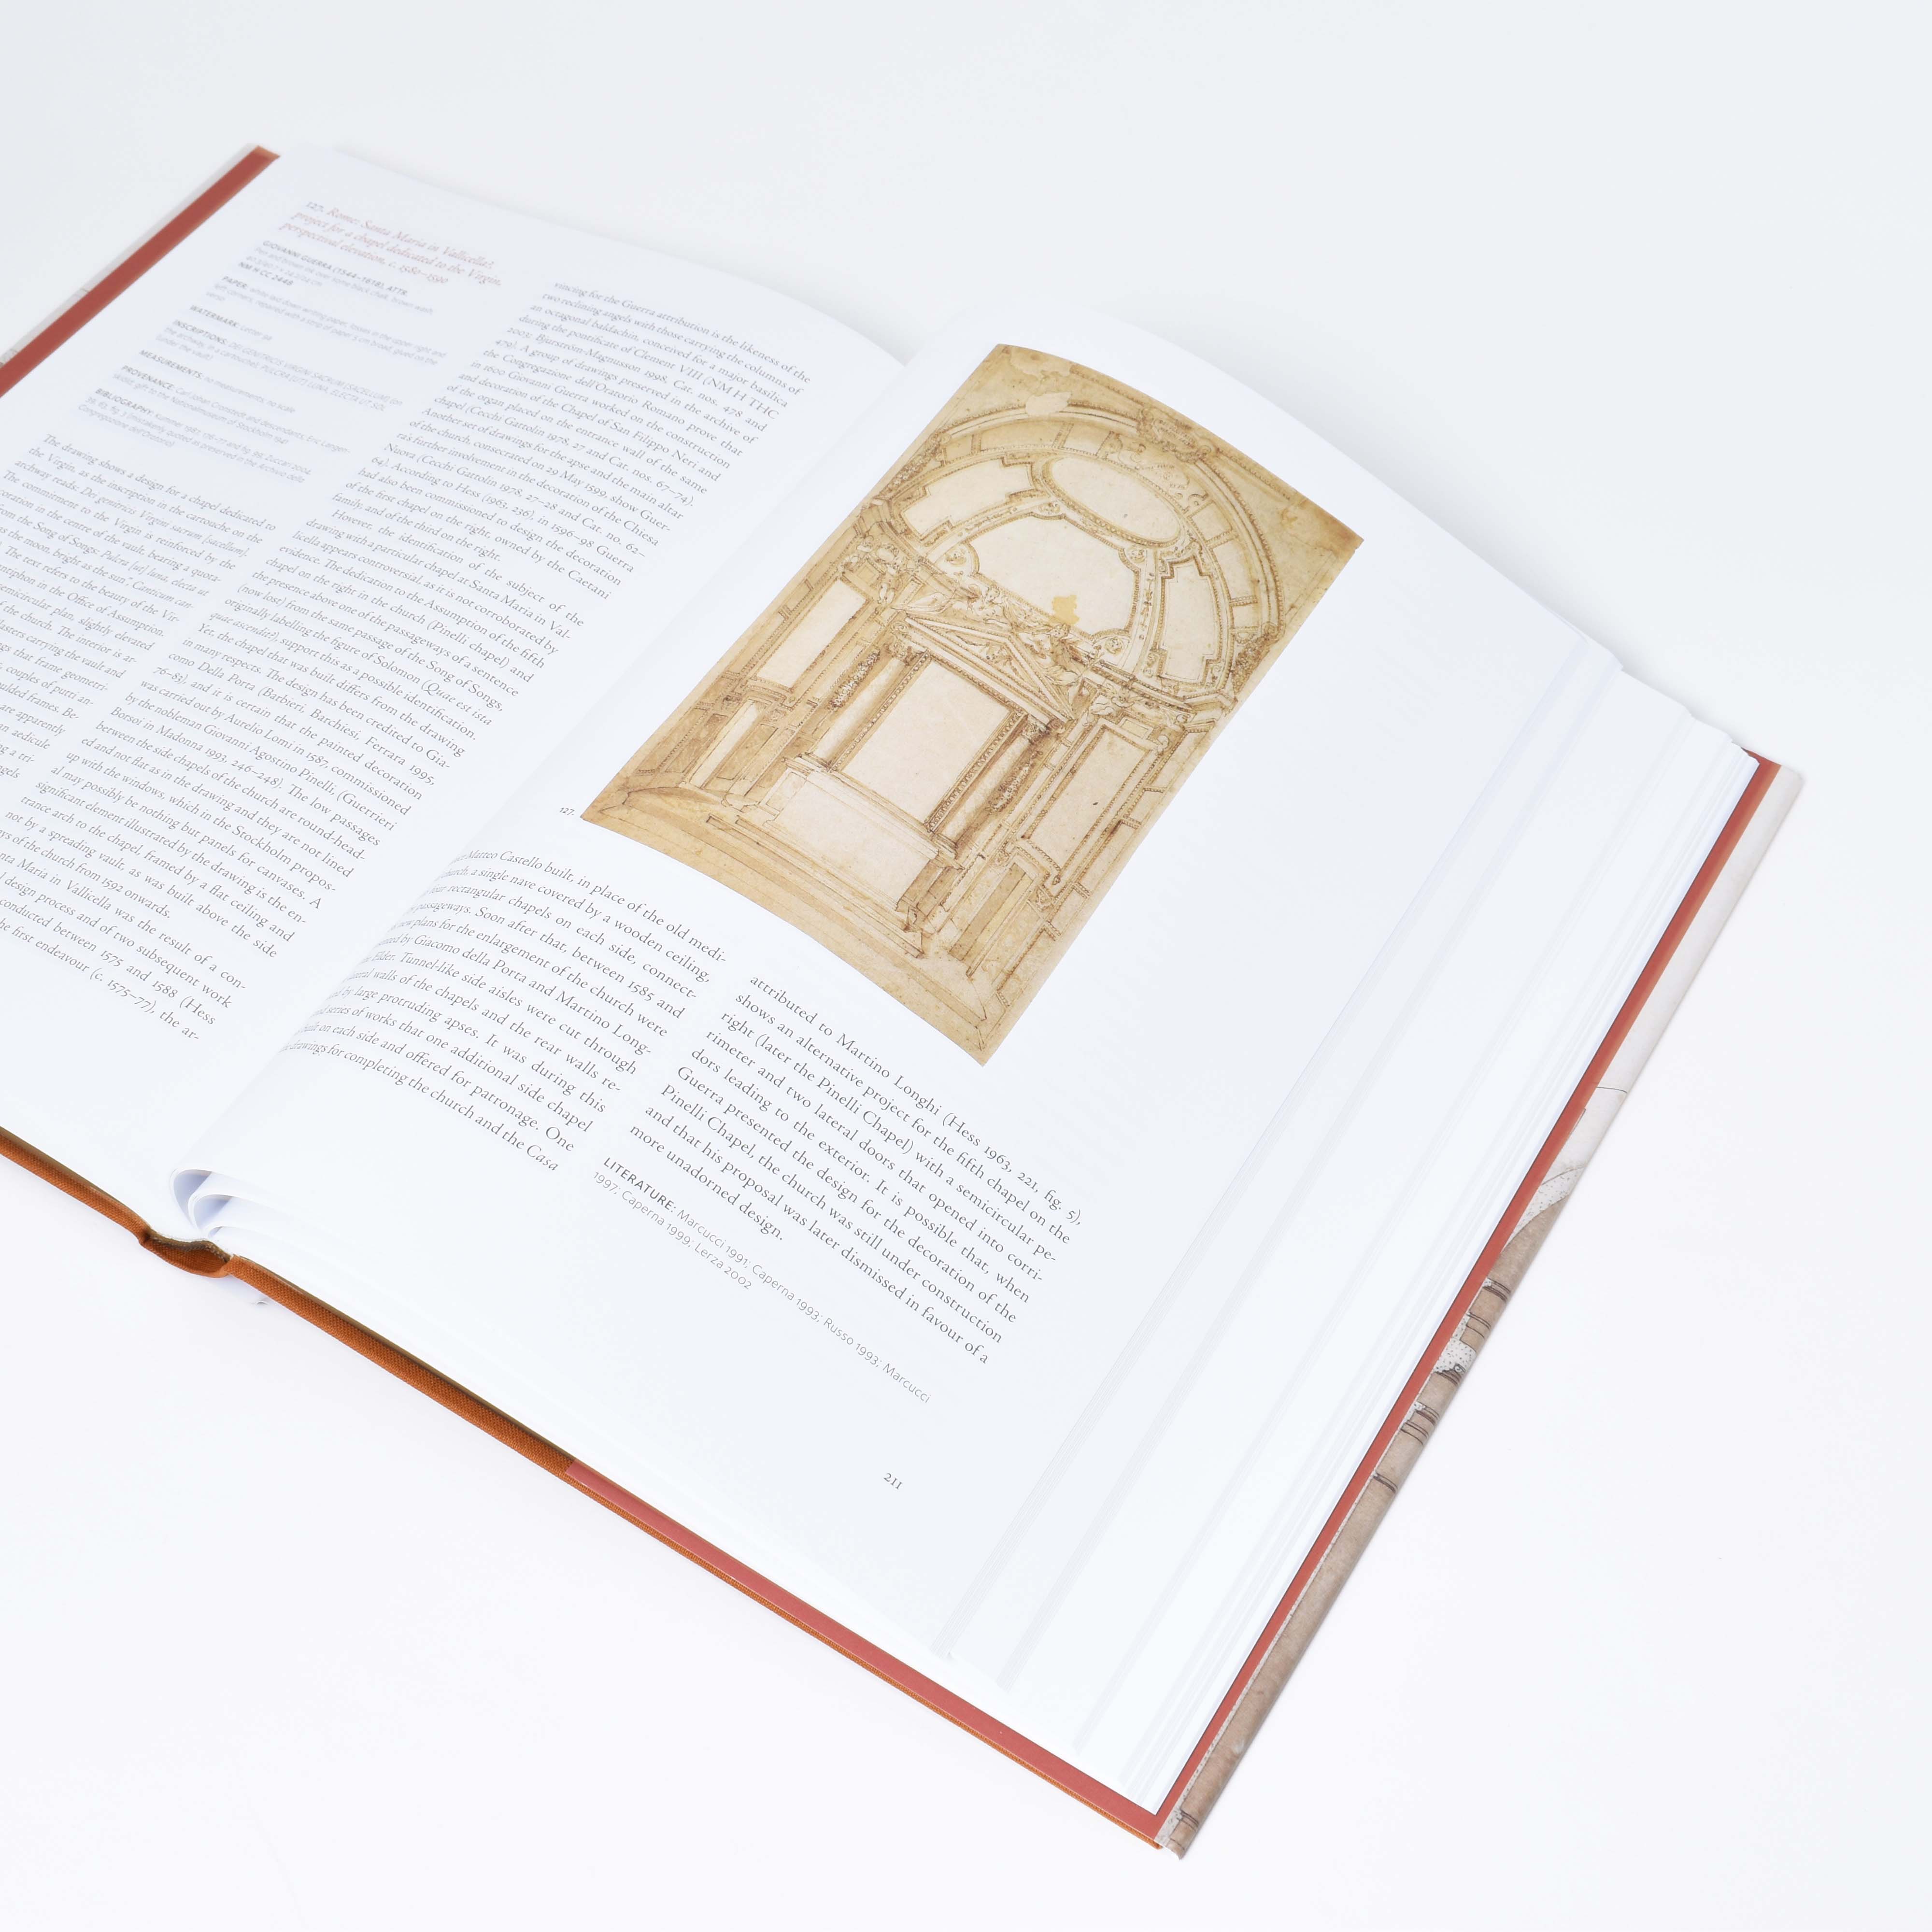 insida till boken Italian archutectural drawings av Anna bortolozzi med bild på arkitekturritning